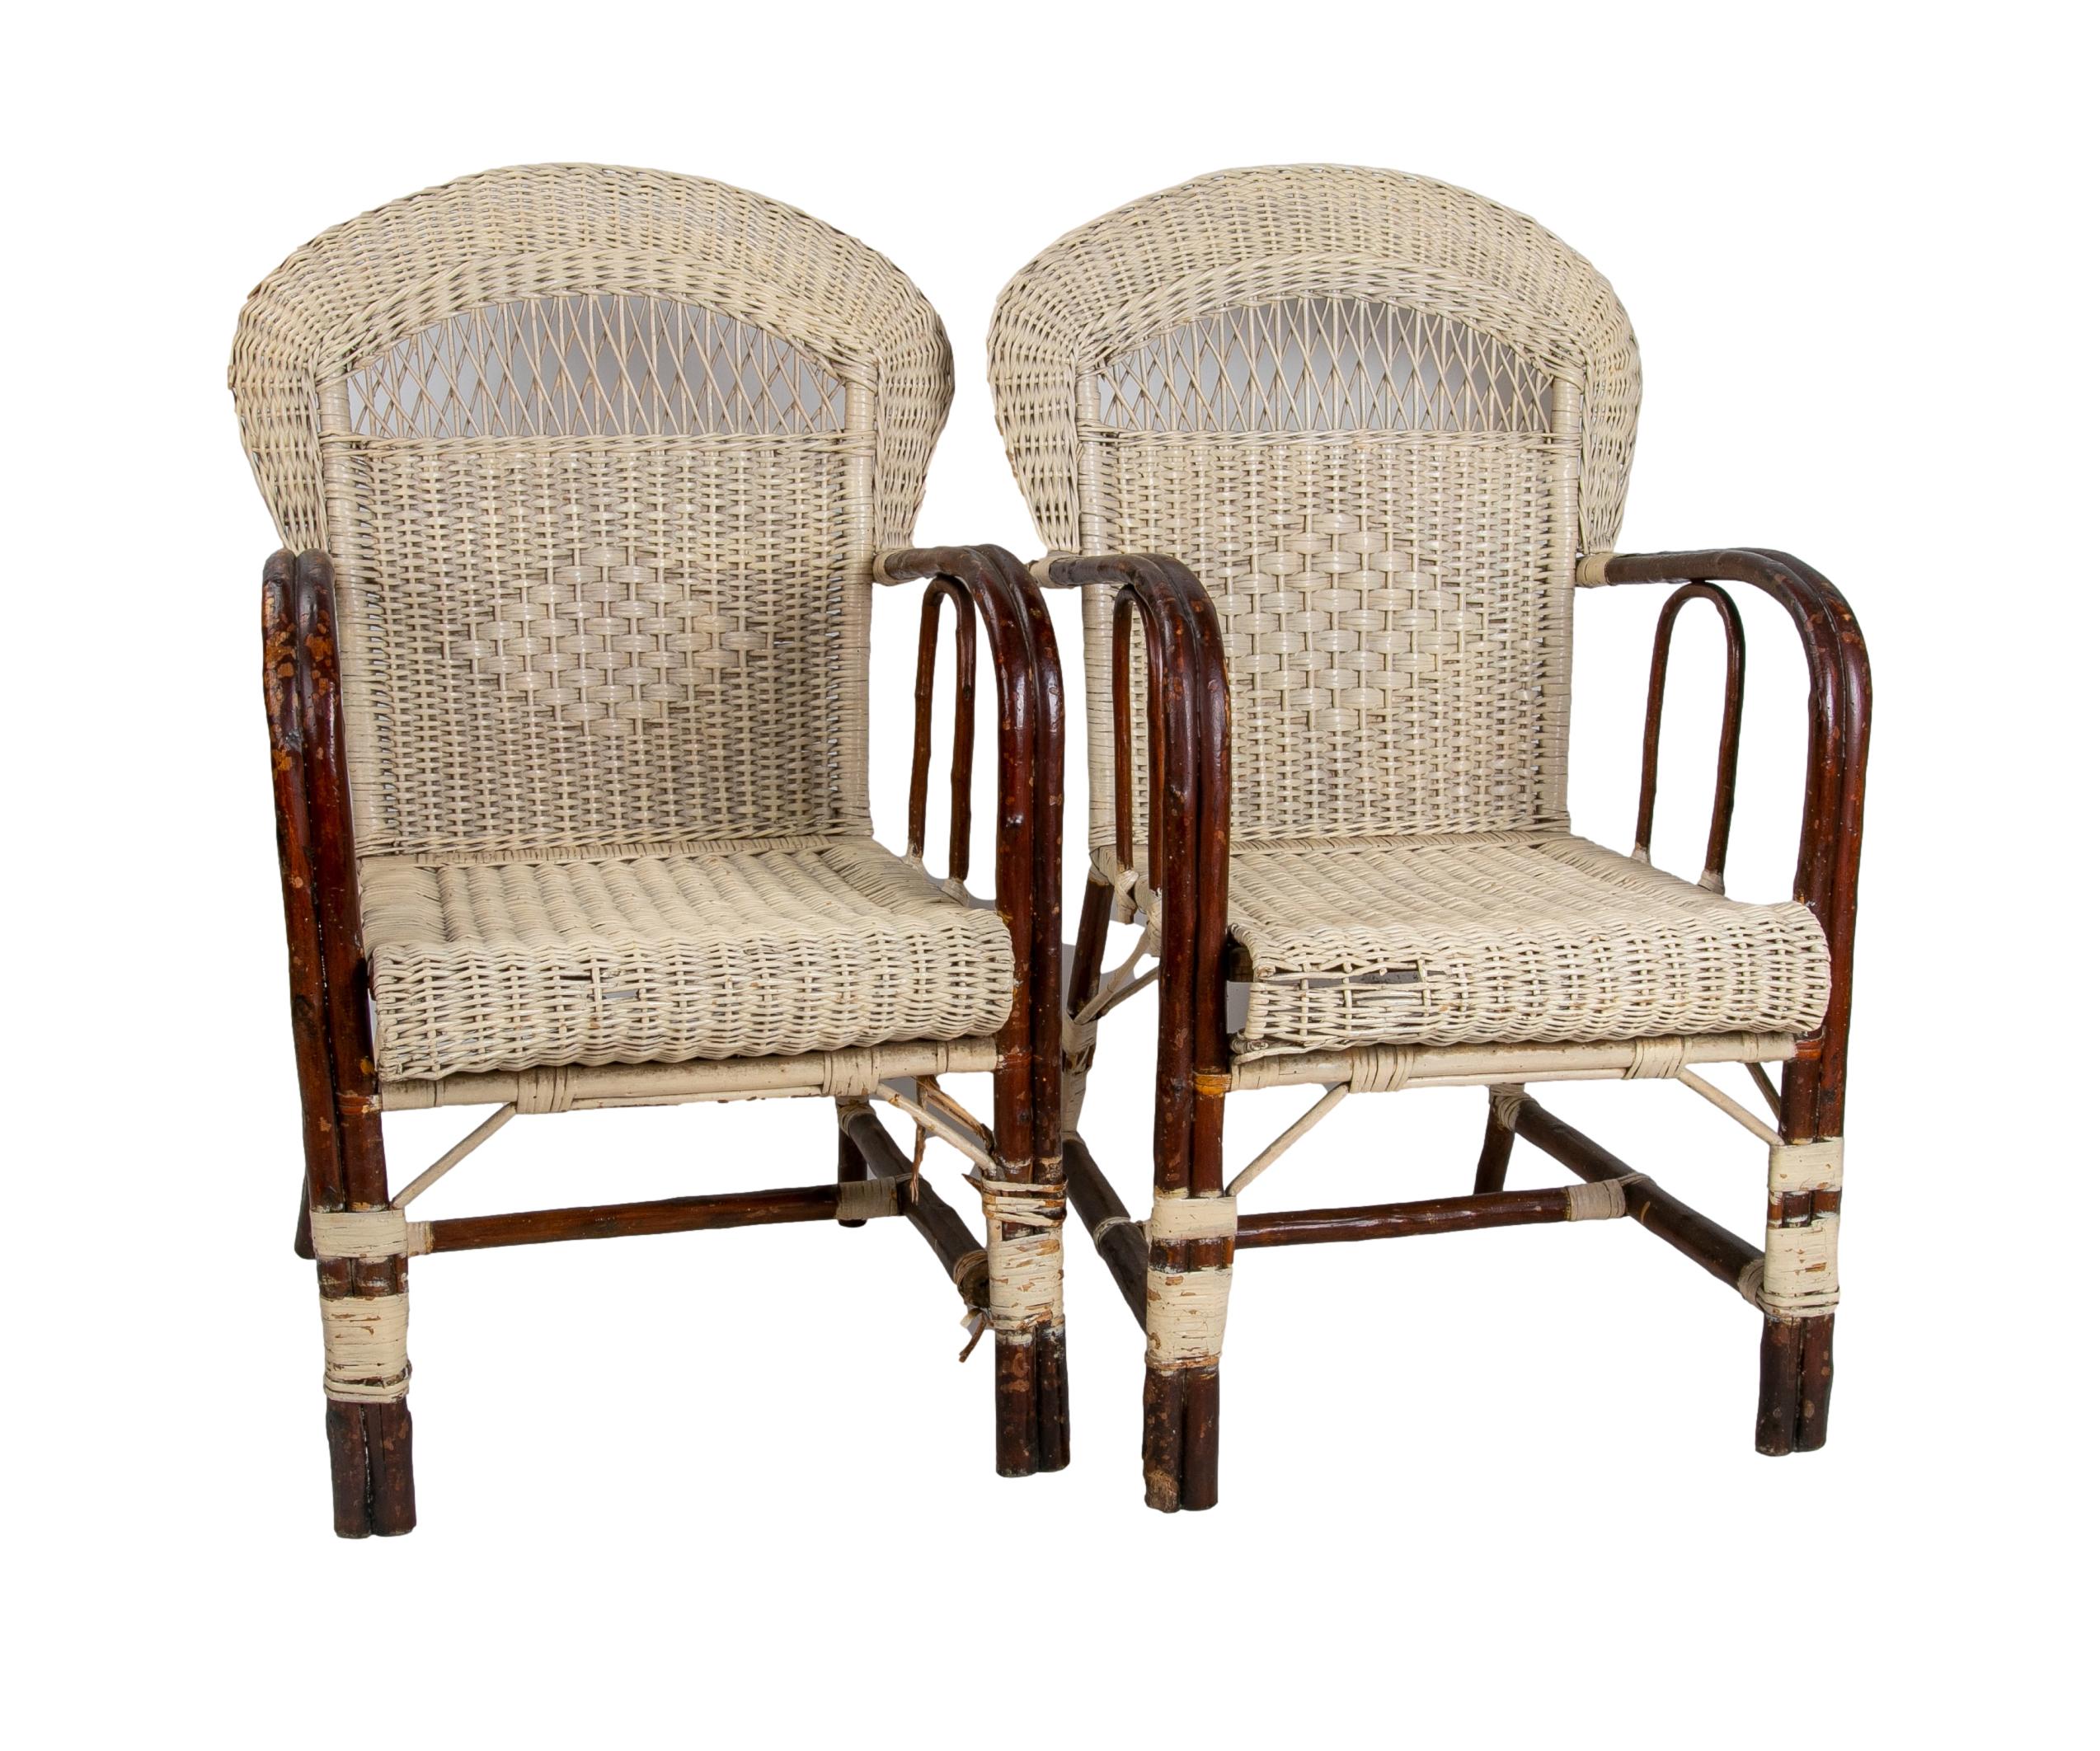 1950s Spanish pair of handmade wicker armchairs.